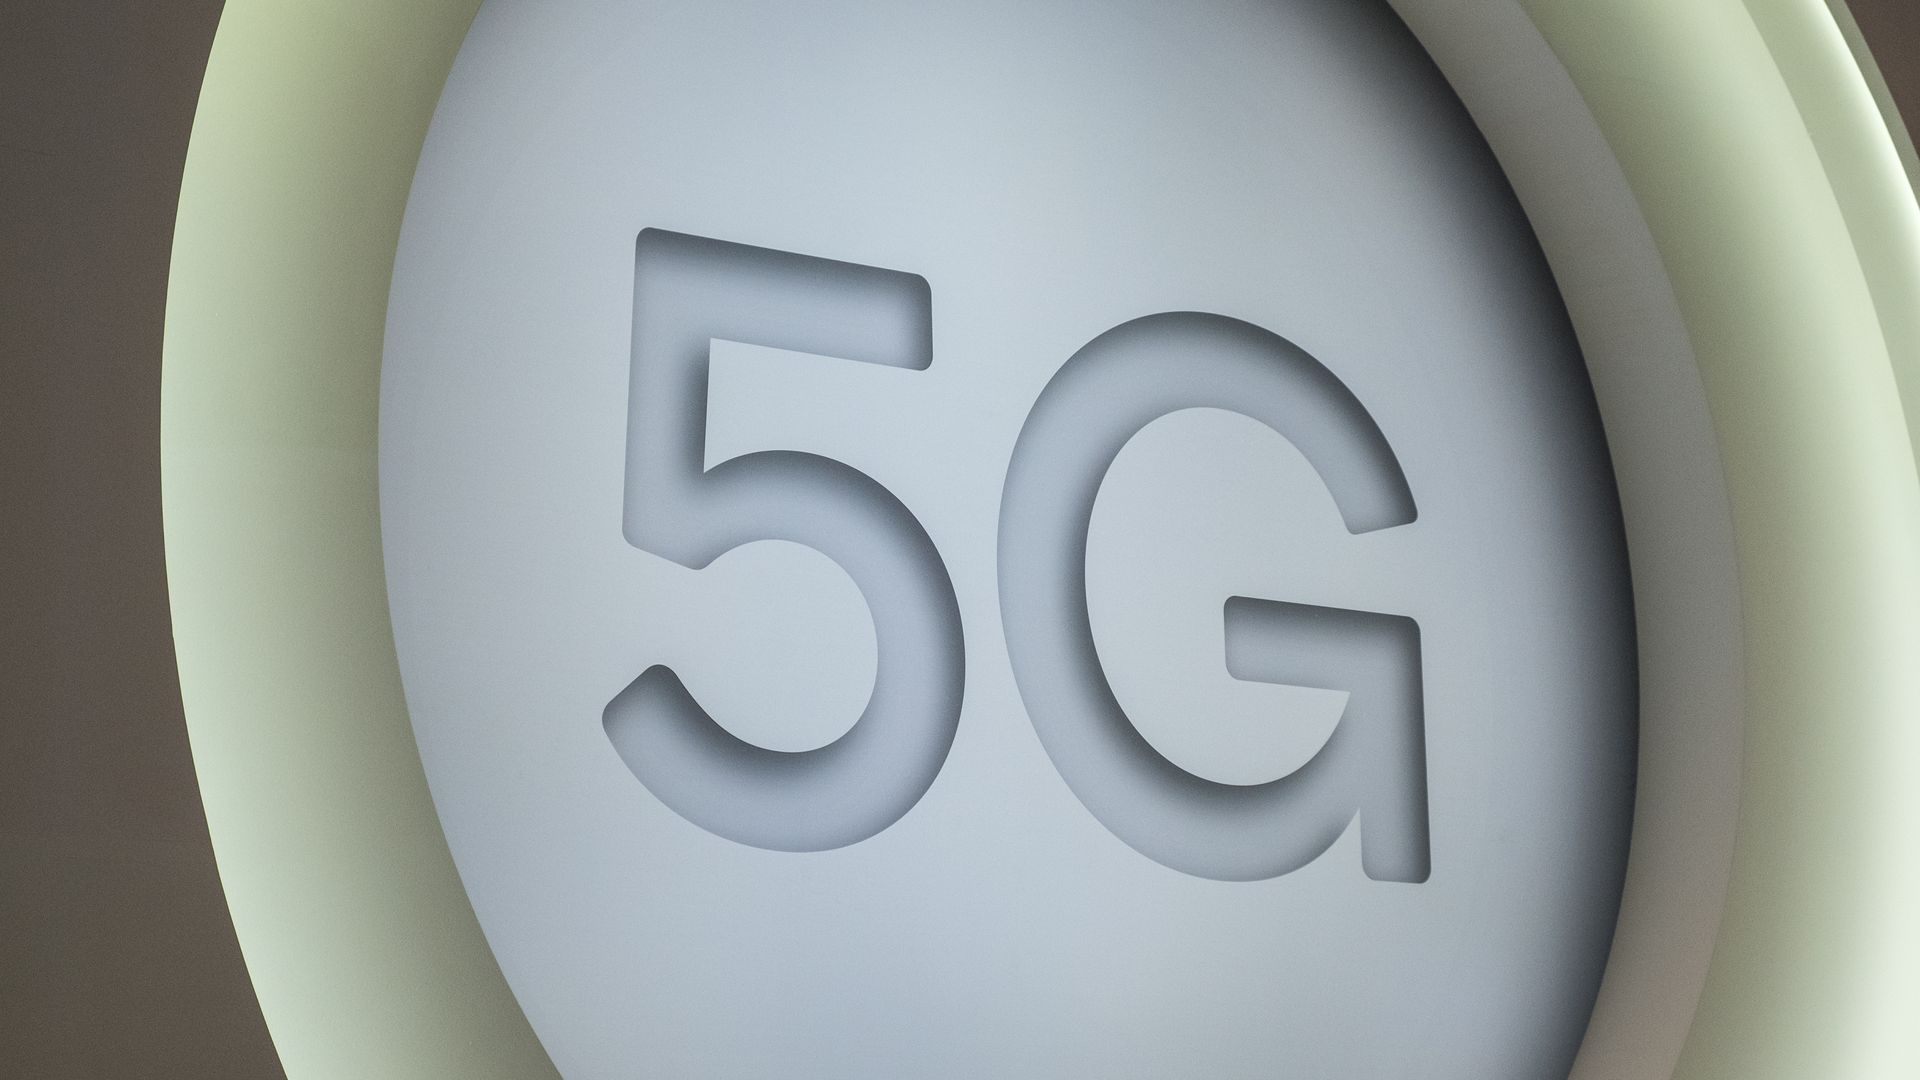 A large 5G logo